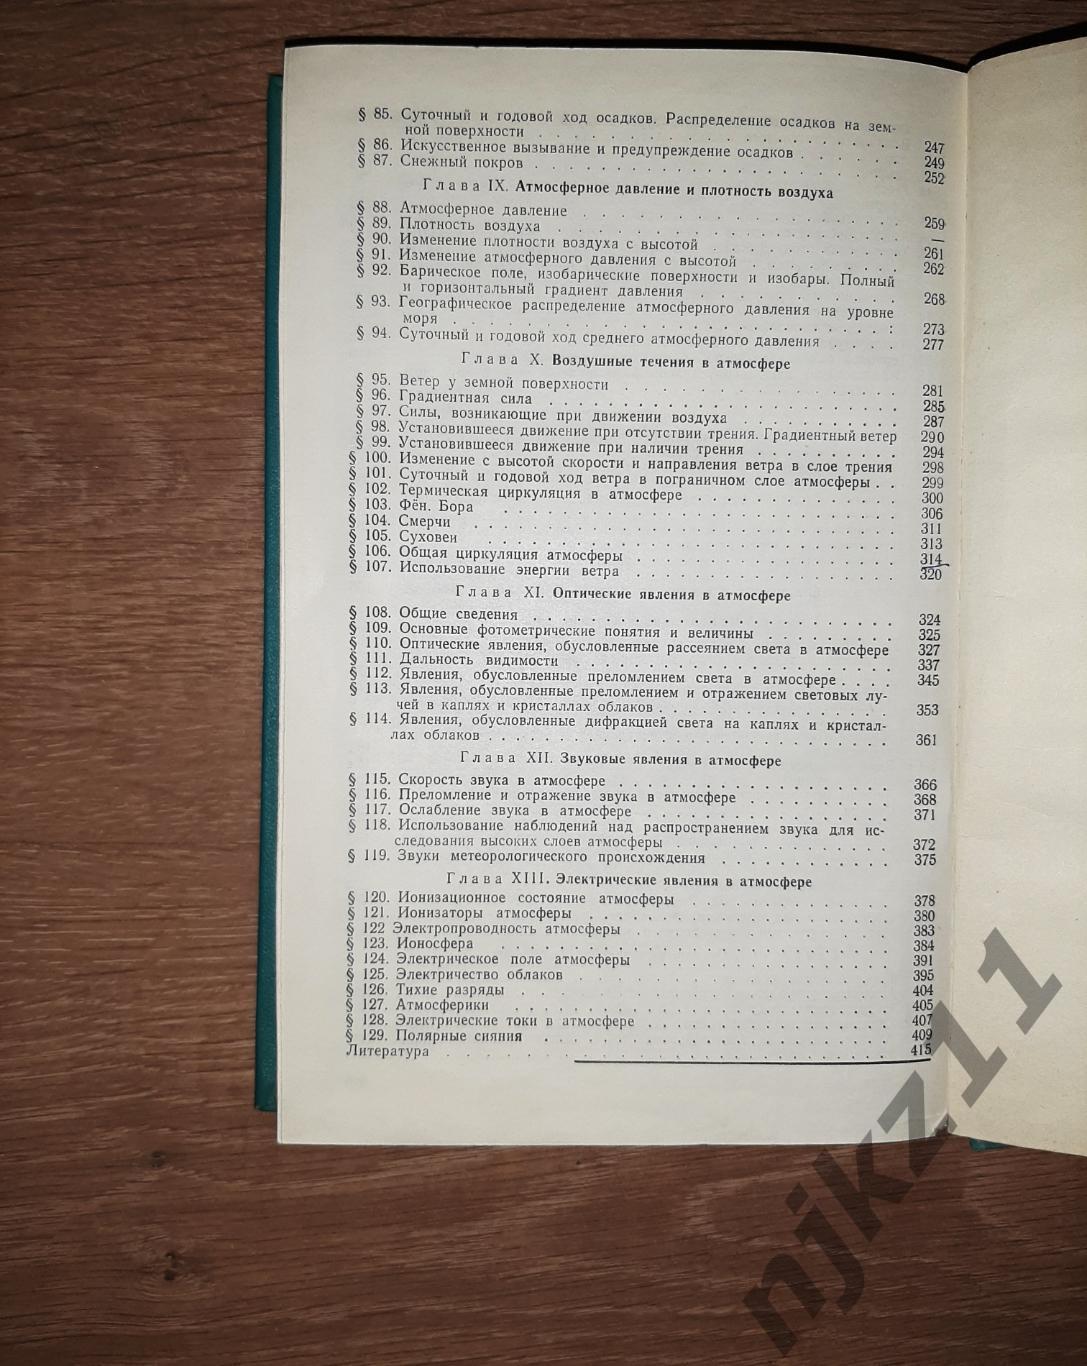 Гуральник МЕТЕОРОЛОГИЯ 1972г редкий учебник СССР 4